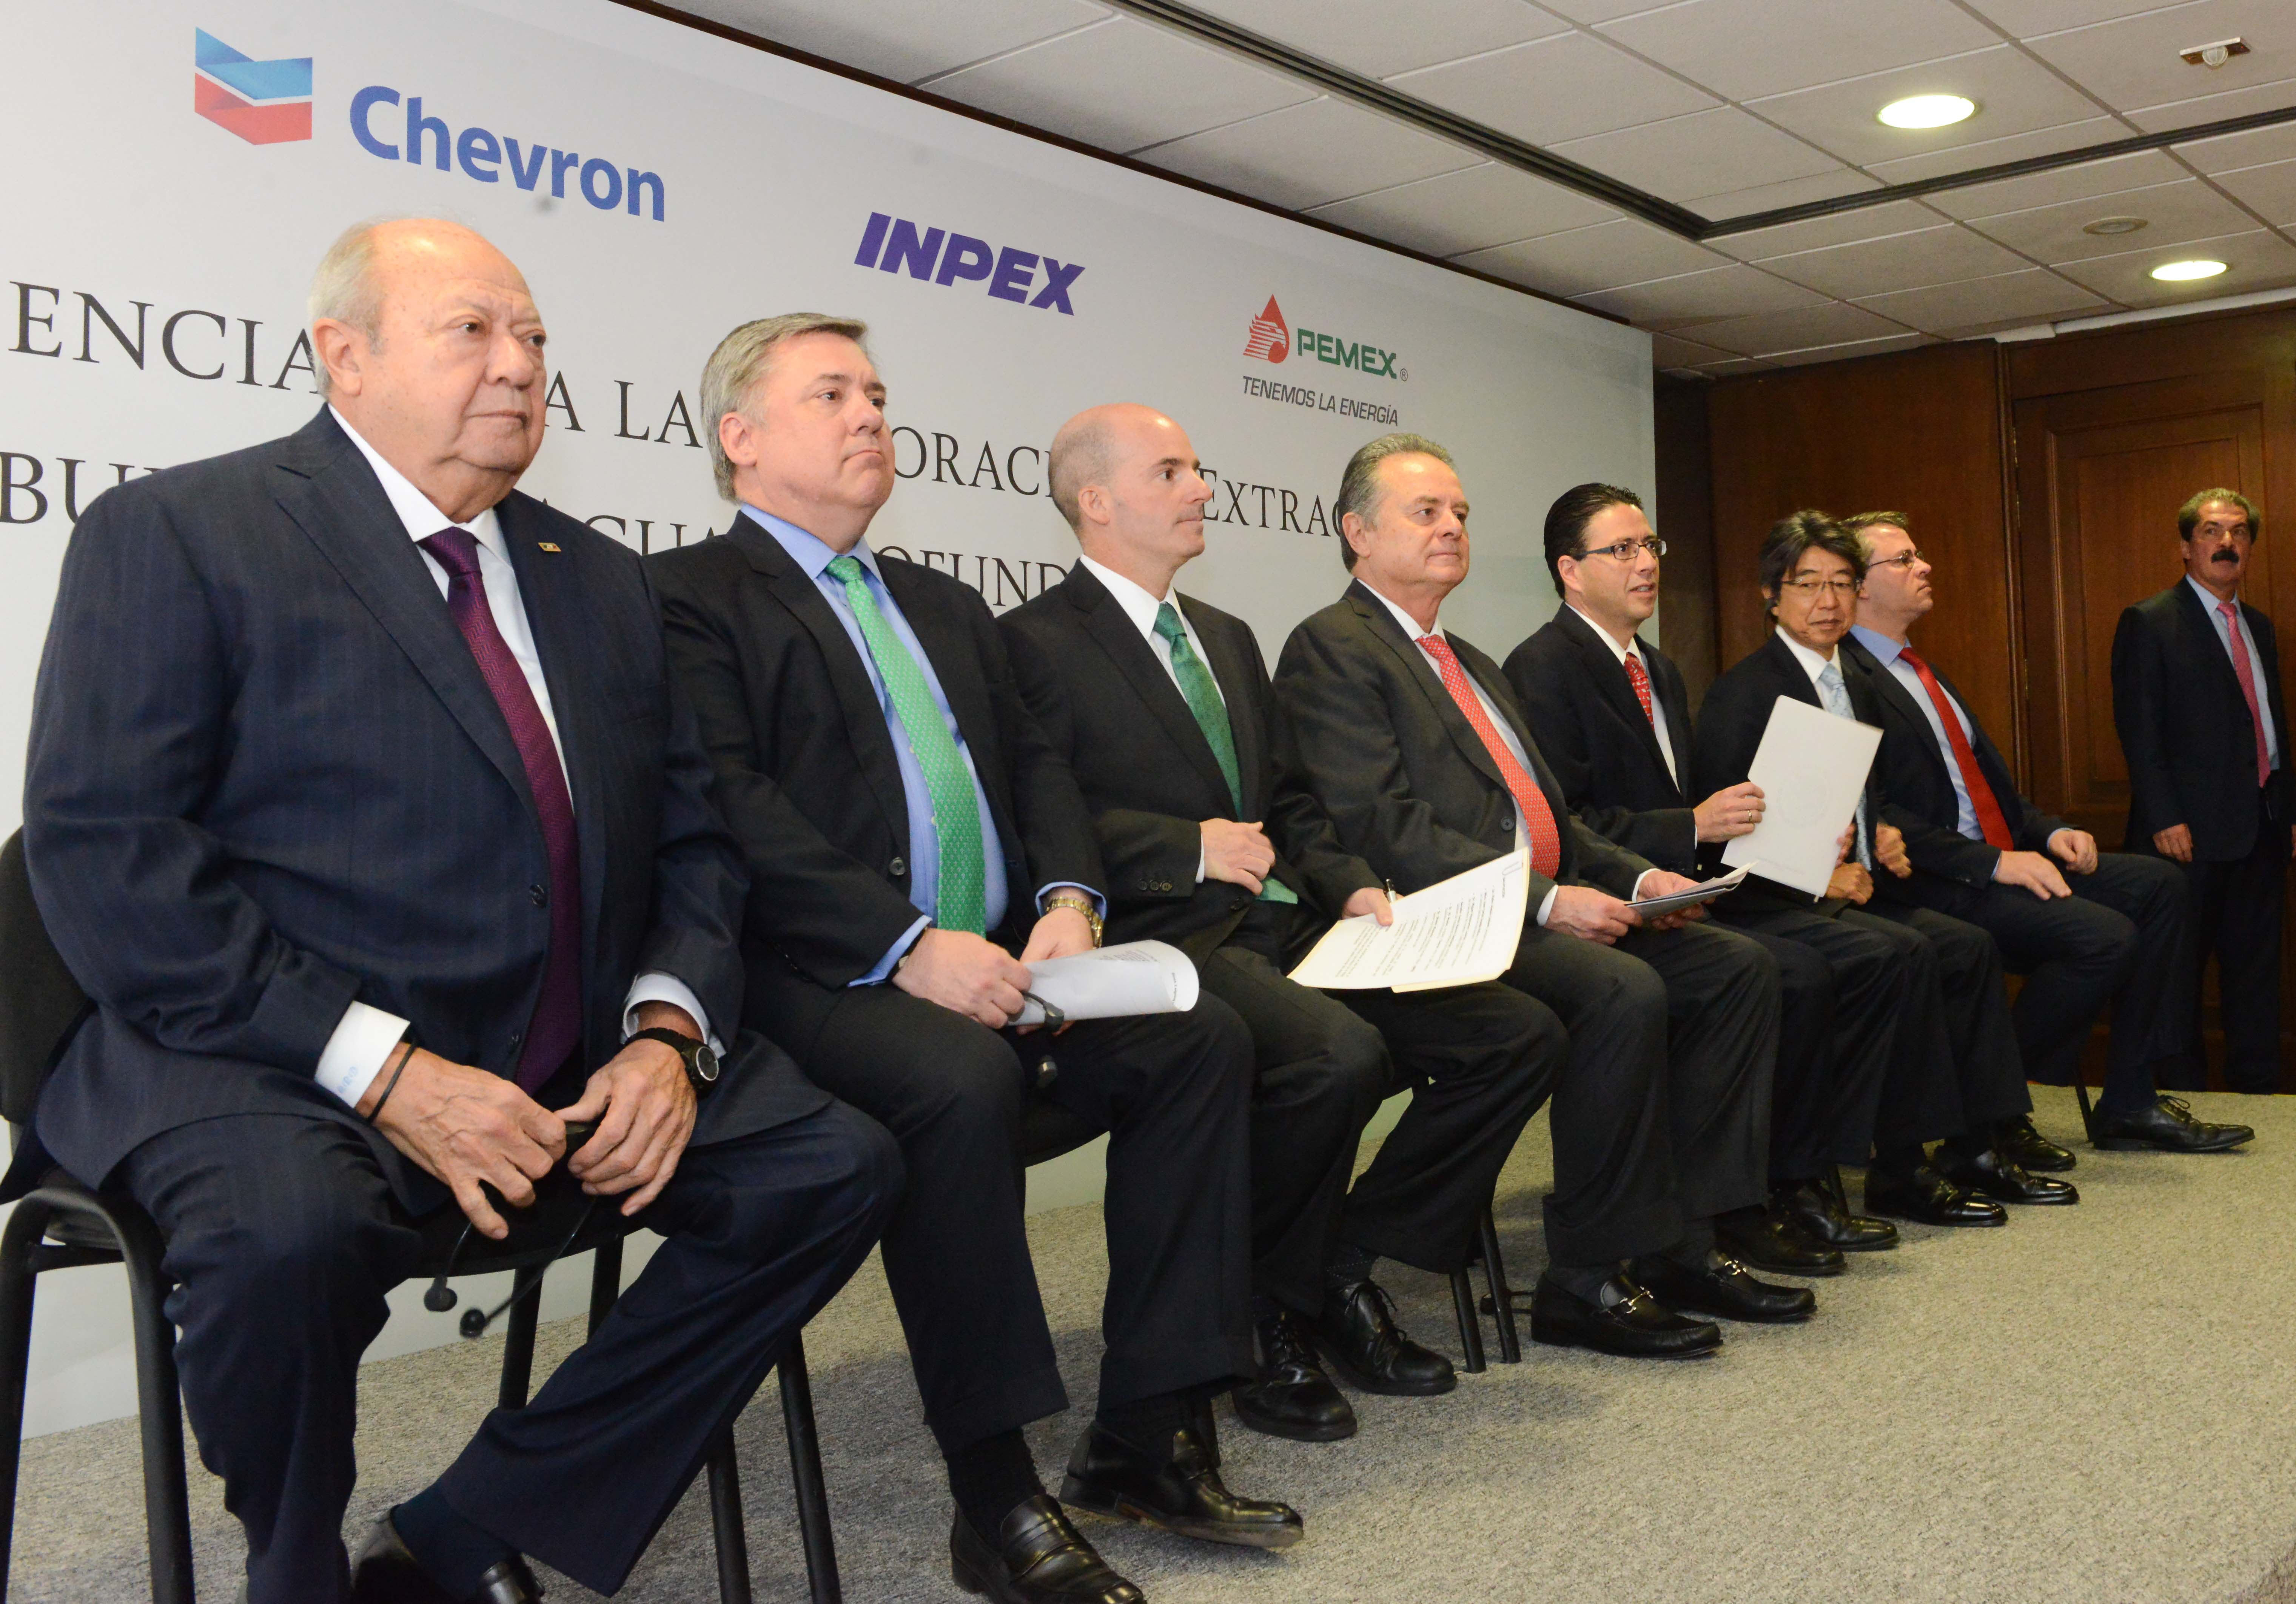 El día de hoy, a nombre del Estado Mexicano, la Comisión Nacional de Hidrocarburos (CNH) suscribió primer contrato obtenido por la Empresa Productiva del Estado Petróleos Mexicanos (Pemex), a través de su subsidiaria Pemex Exploración y Producción, en participación conjunta con las compañías Inpex Corporation y Chevron Energía de México S. de R.L. de C.V. en un proceso de competencia abierta, derivado de la Reforma Energética.